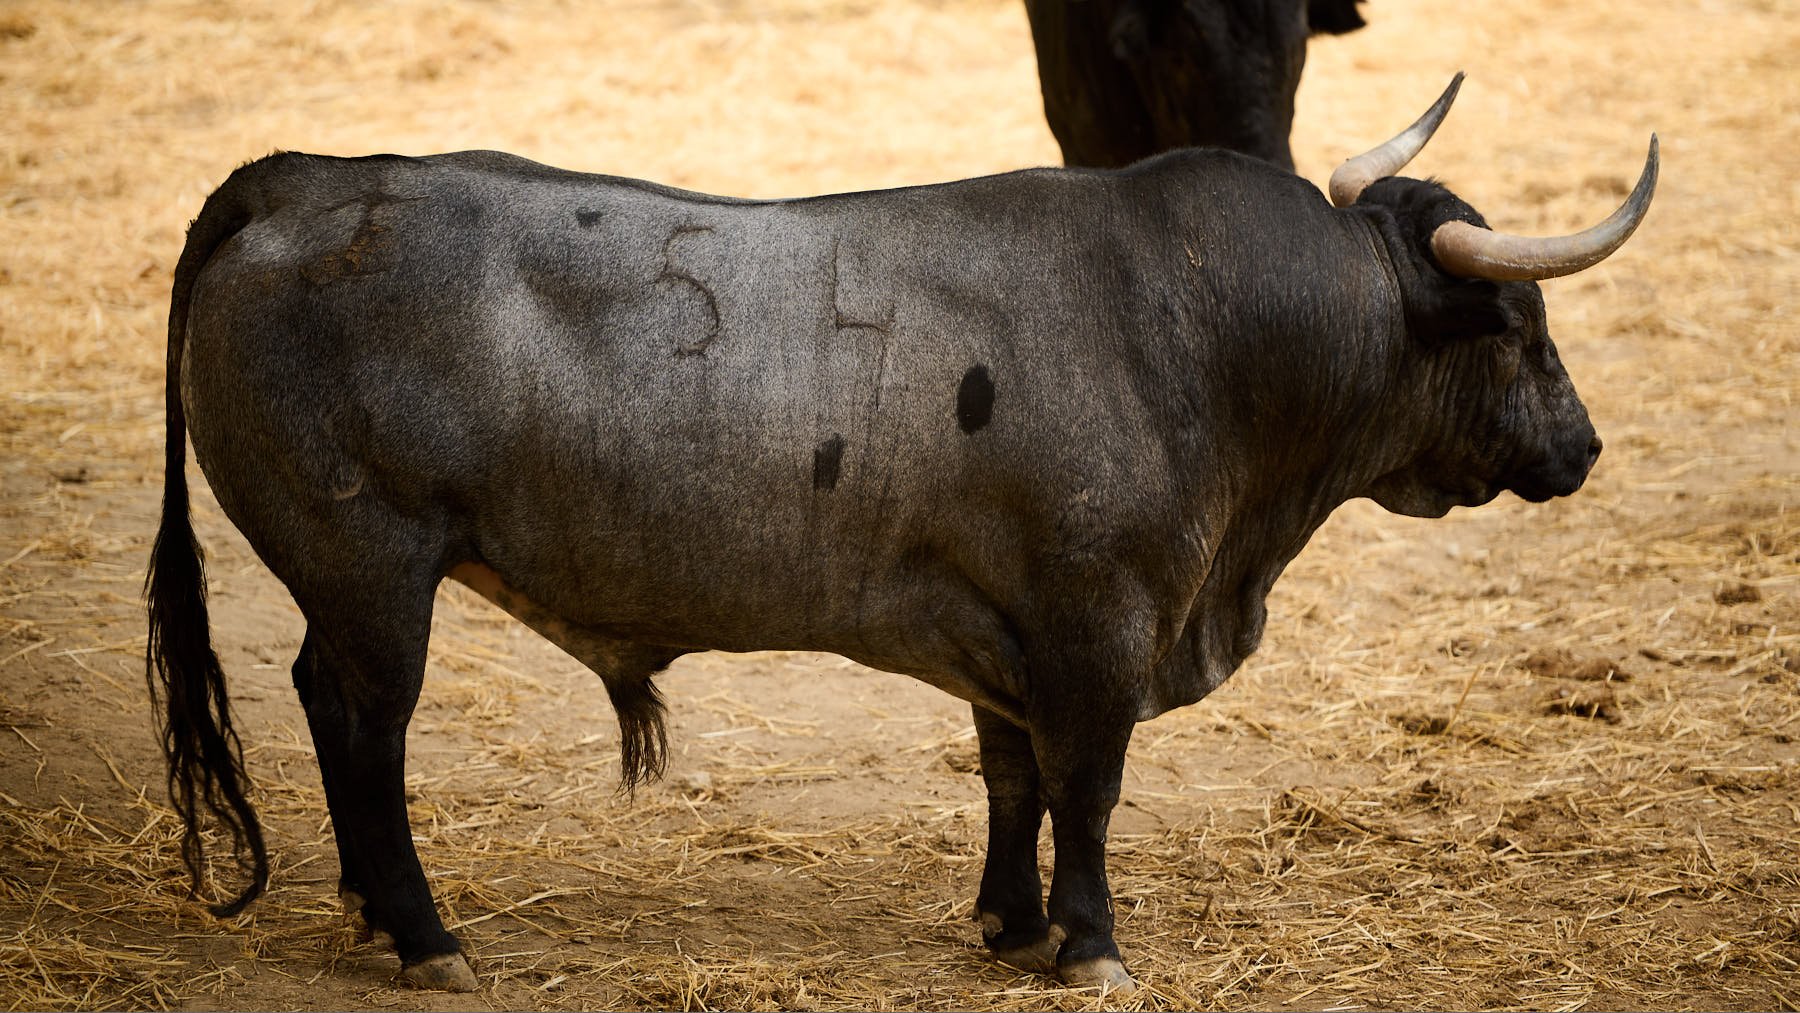 El toro 'Cartonero' (nº54) de la ganadería de José Escolar Gil (8 de julio) y de 605 kilos de peso en los corrales del Gas de Pamplona. PABLO LASAOSA